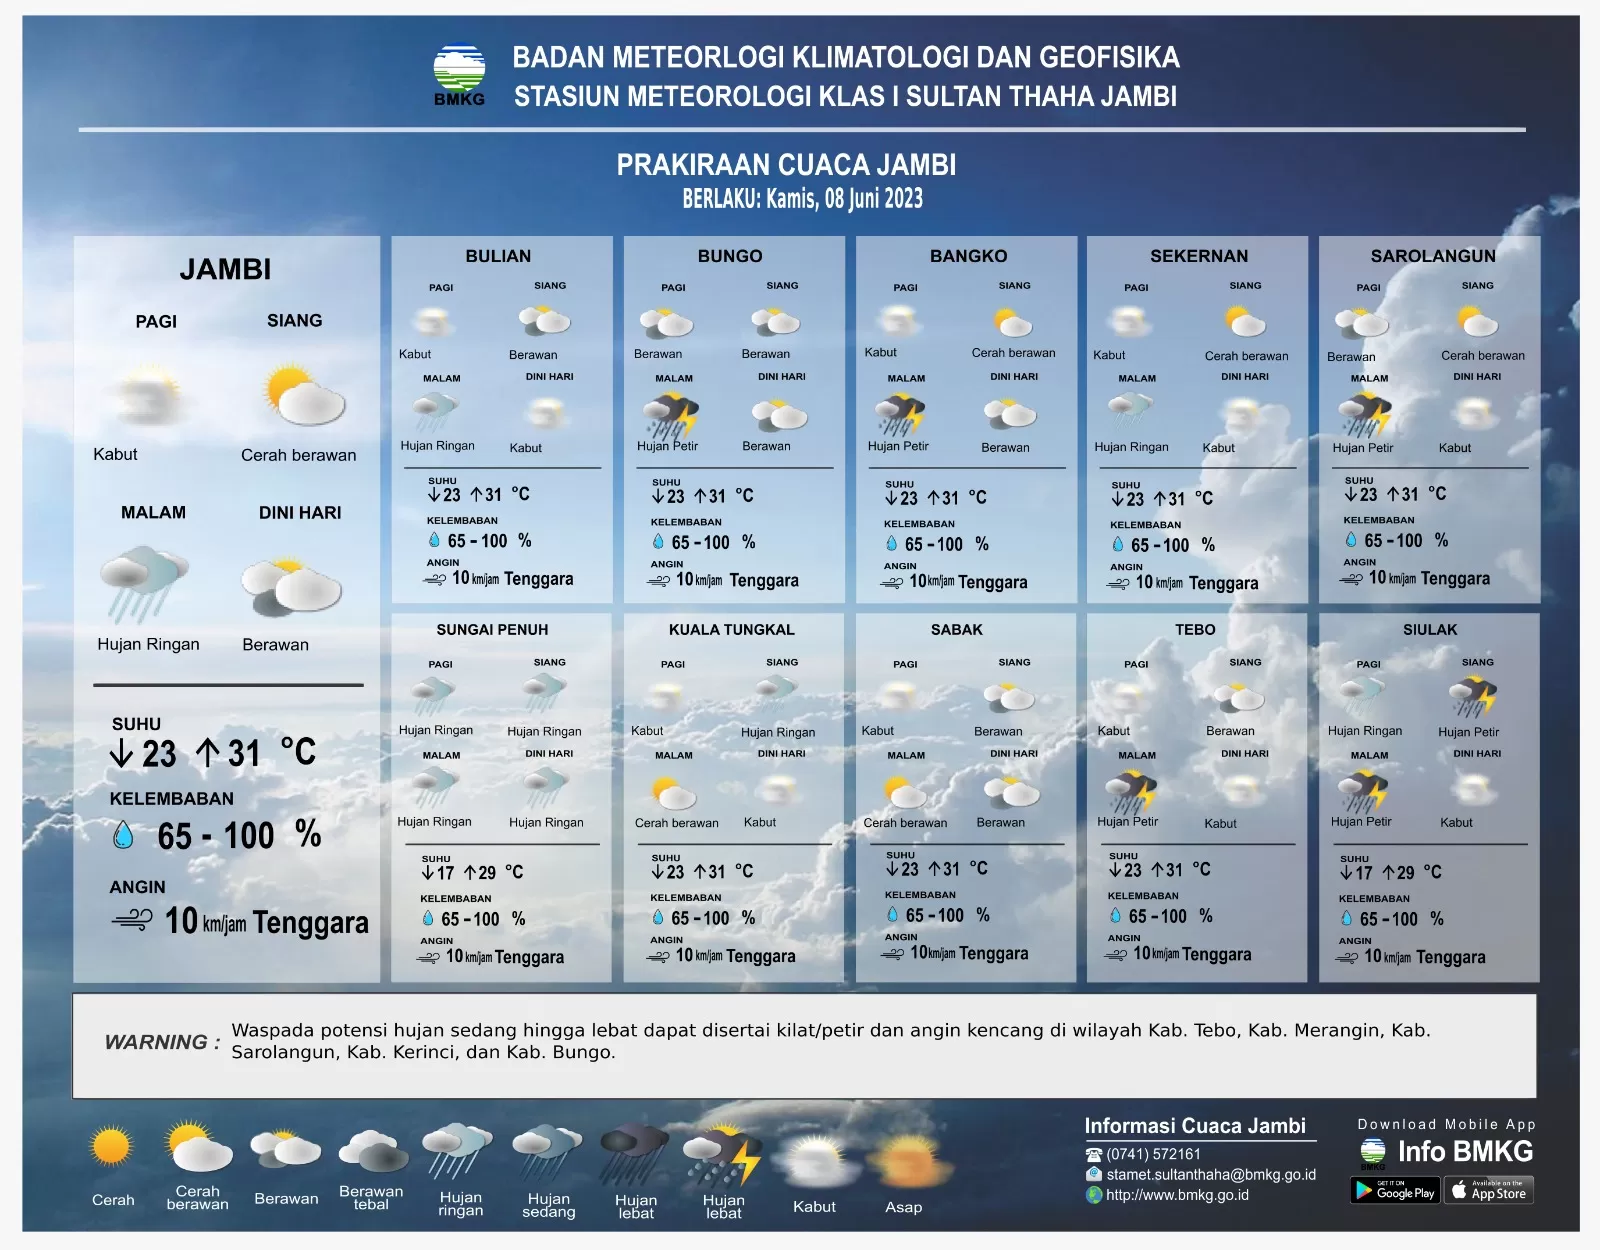 Tangkapan layar prakiraan cuaca perkecamatan di Kabupaten Bungo (BMKG.go.id)